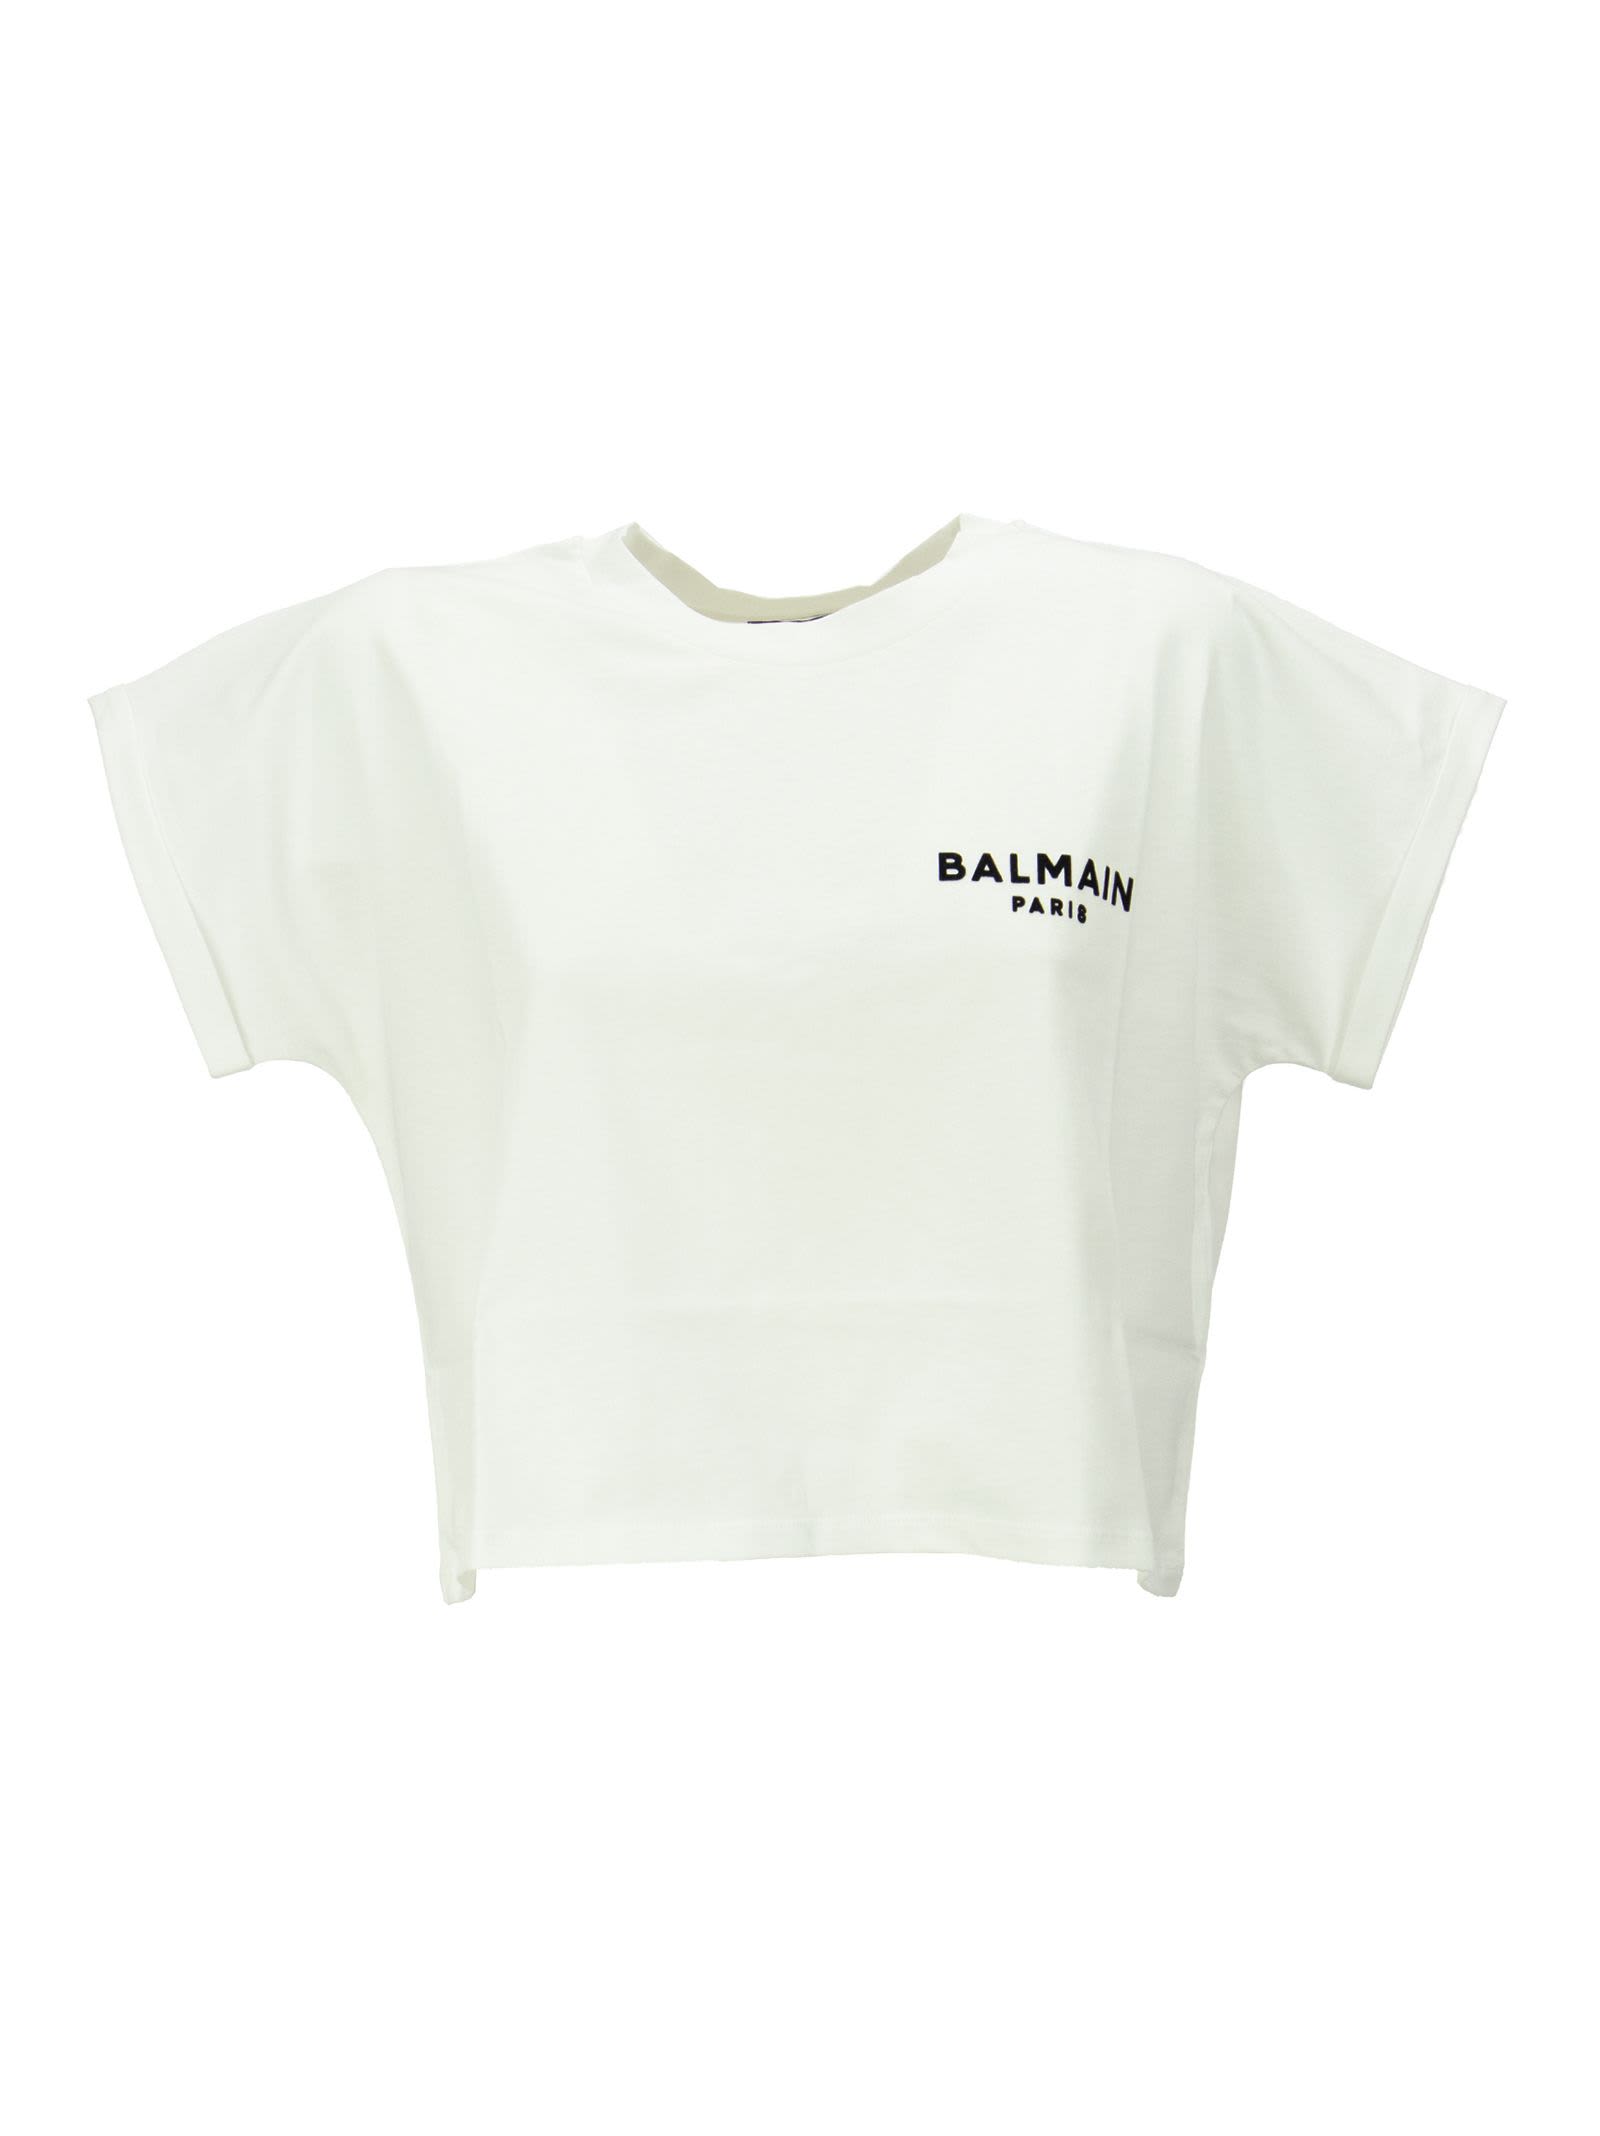 Balmain Cropped White Cotton T-shirt With Flocked White Balmain Logo